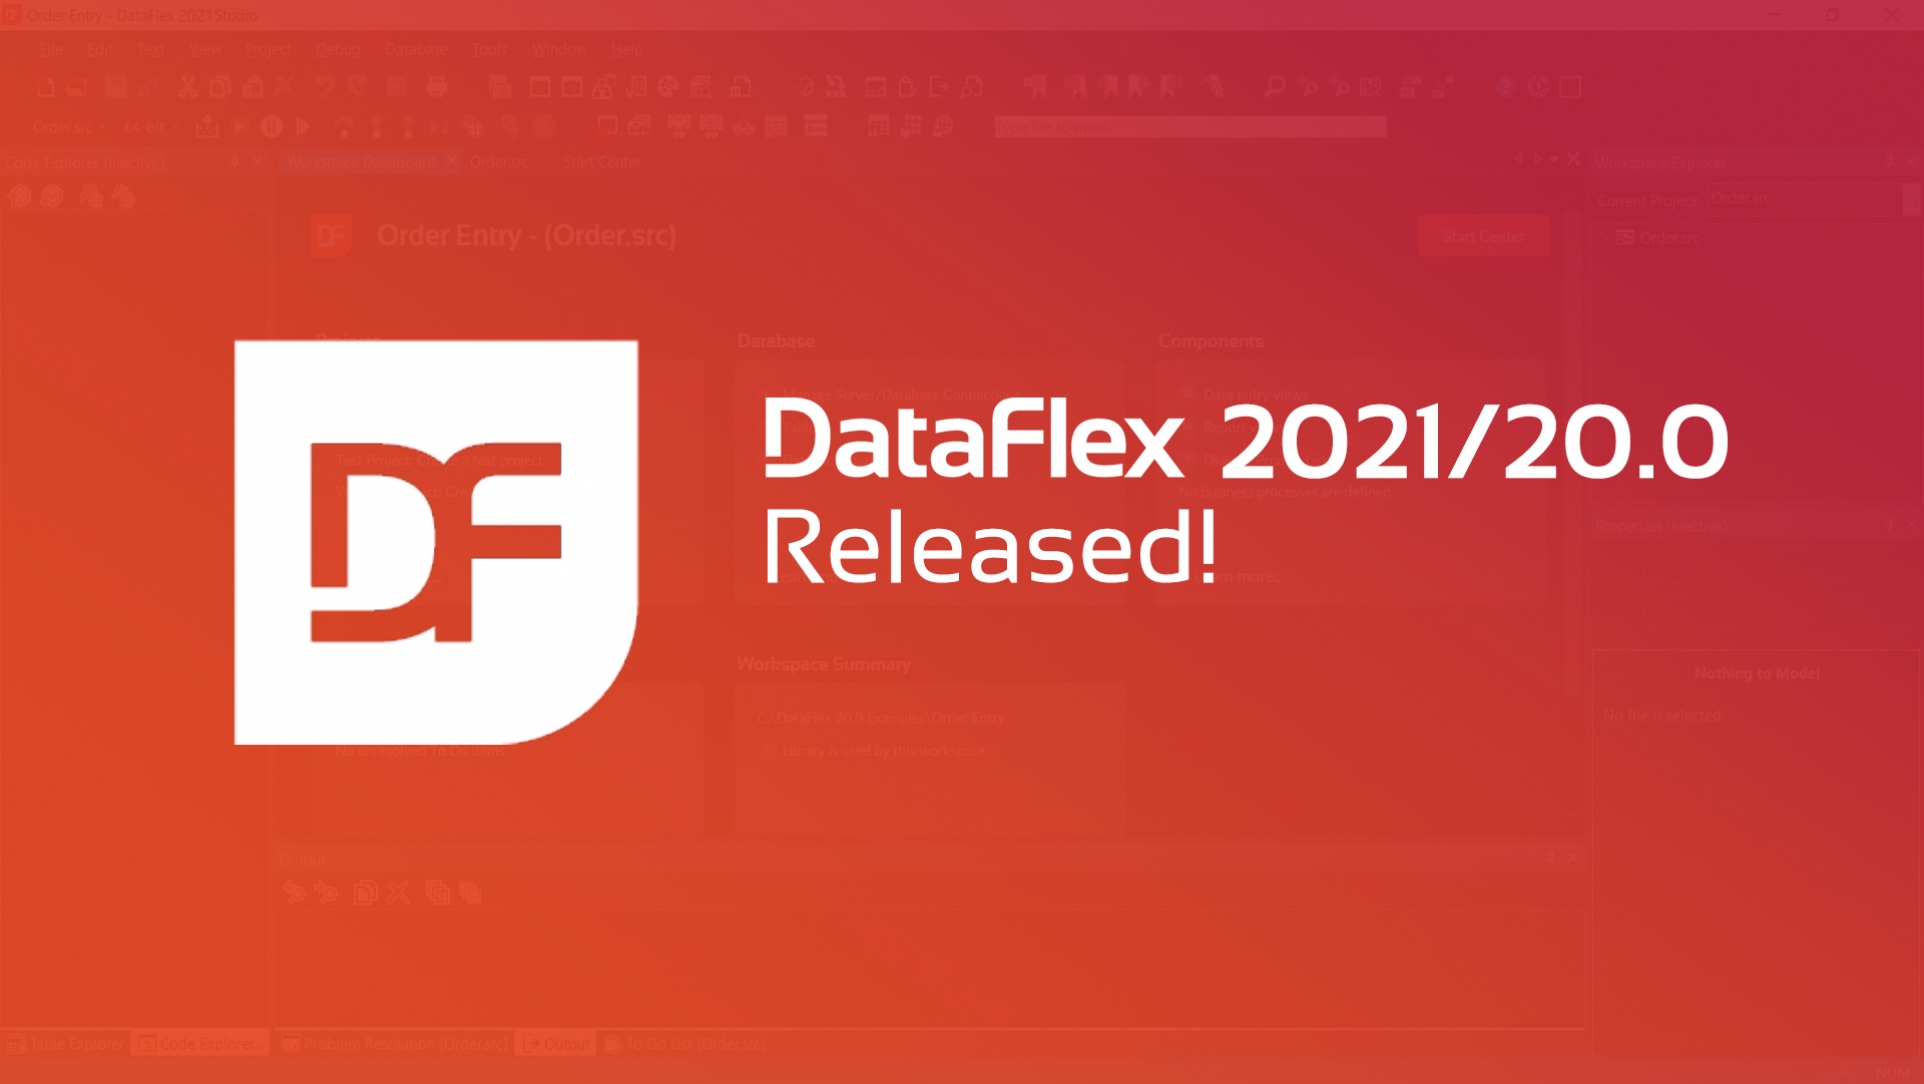 DataFlex 2021 Released!